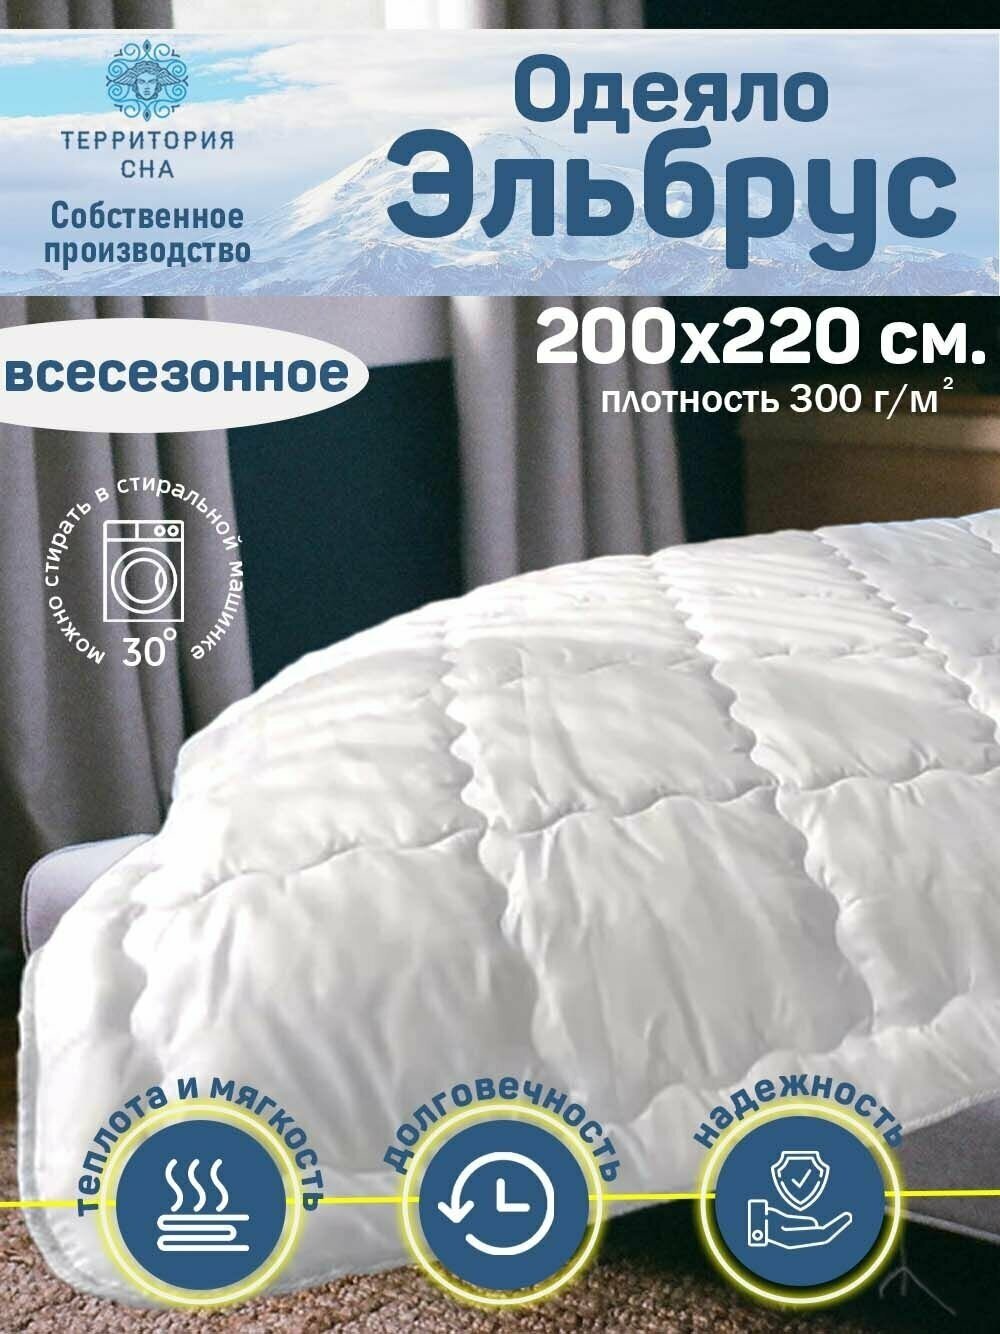 Одеяло евро Эльбрус 200х220 см, теплое, всесезонное - фотография № 1